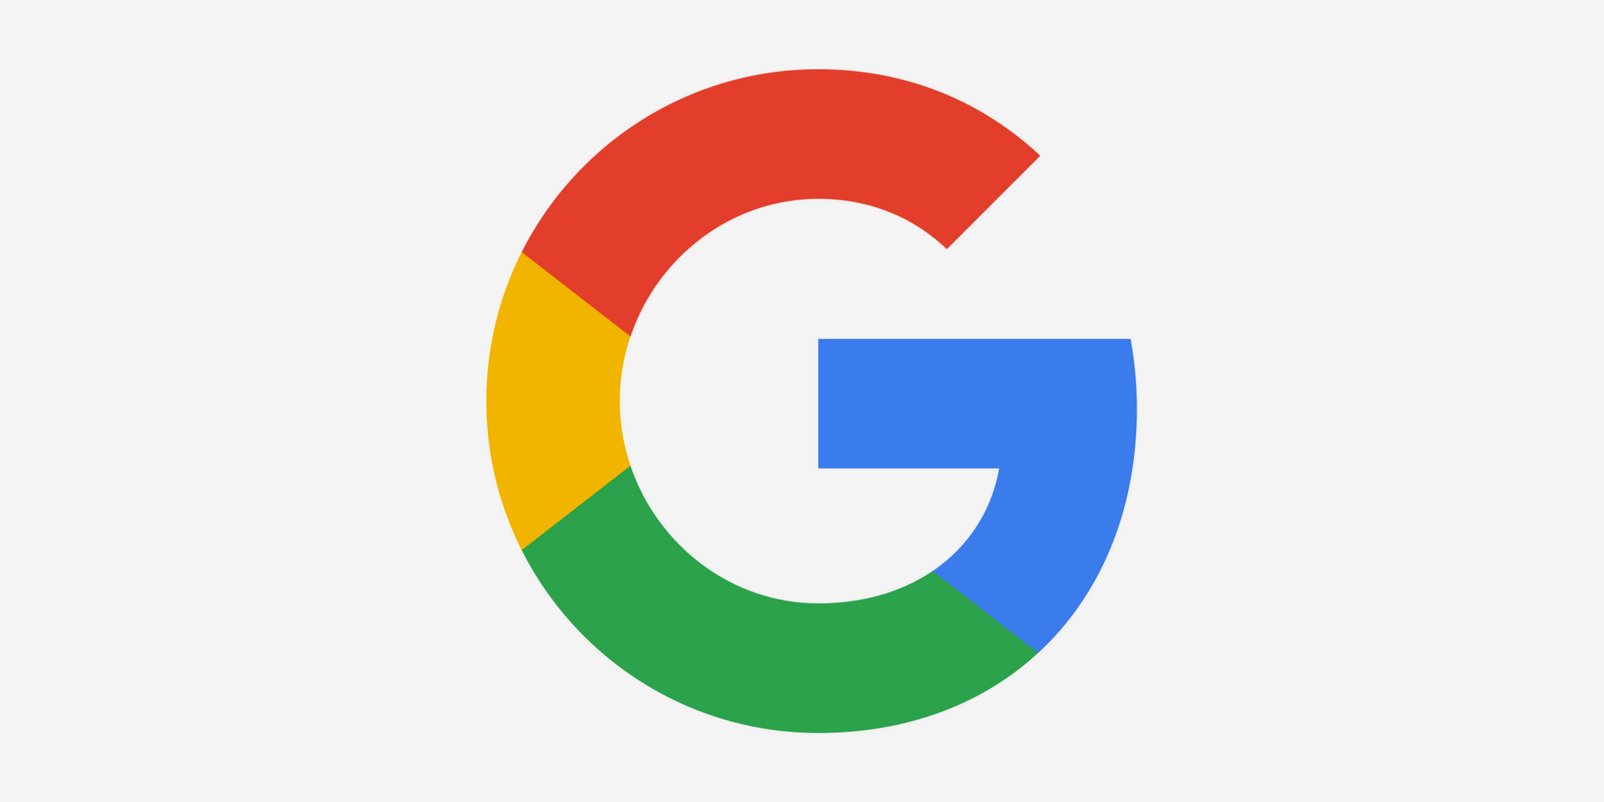 Favicon, google, logo, new icon | Icon search engine